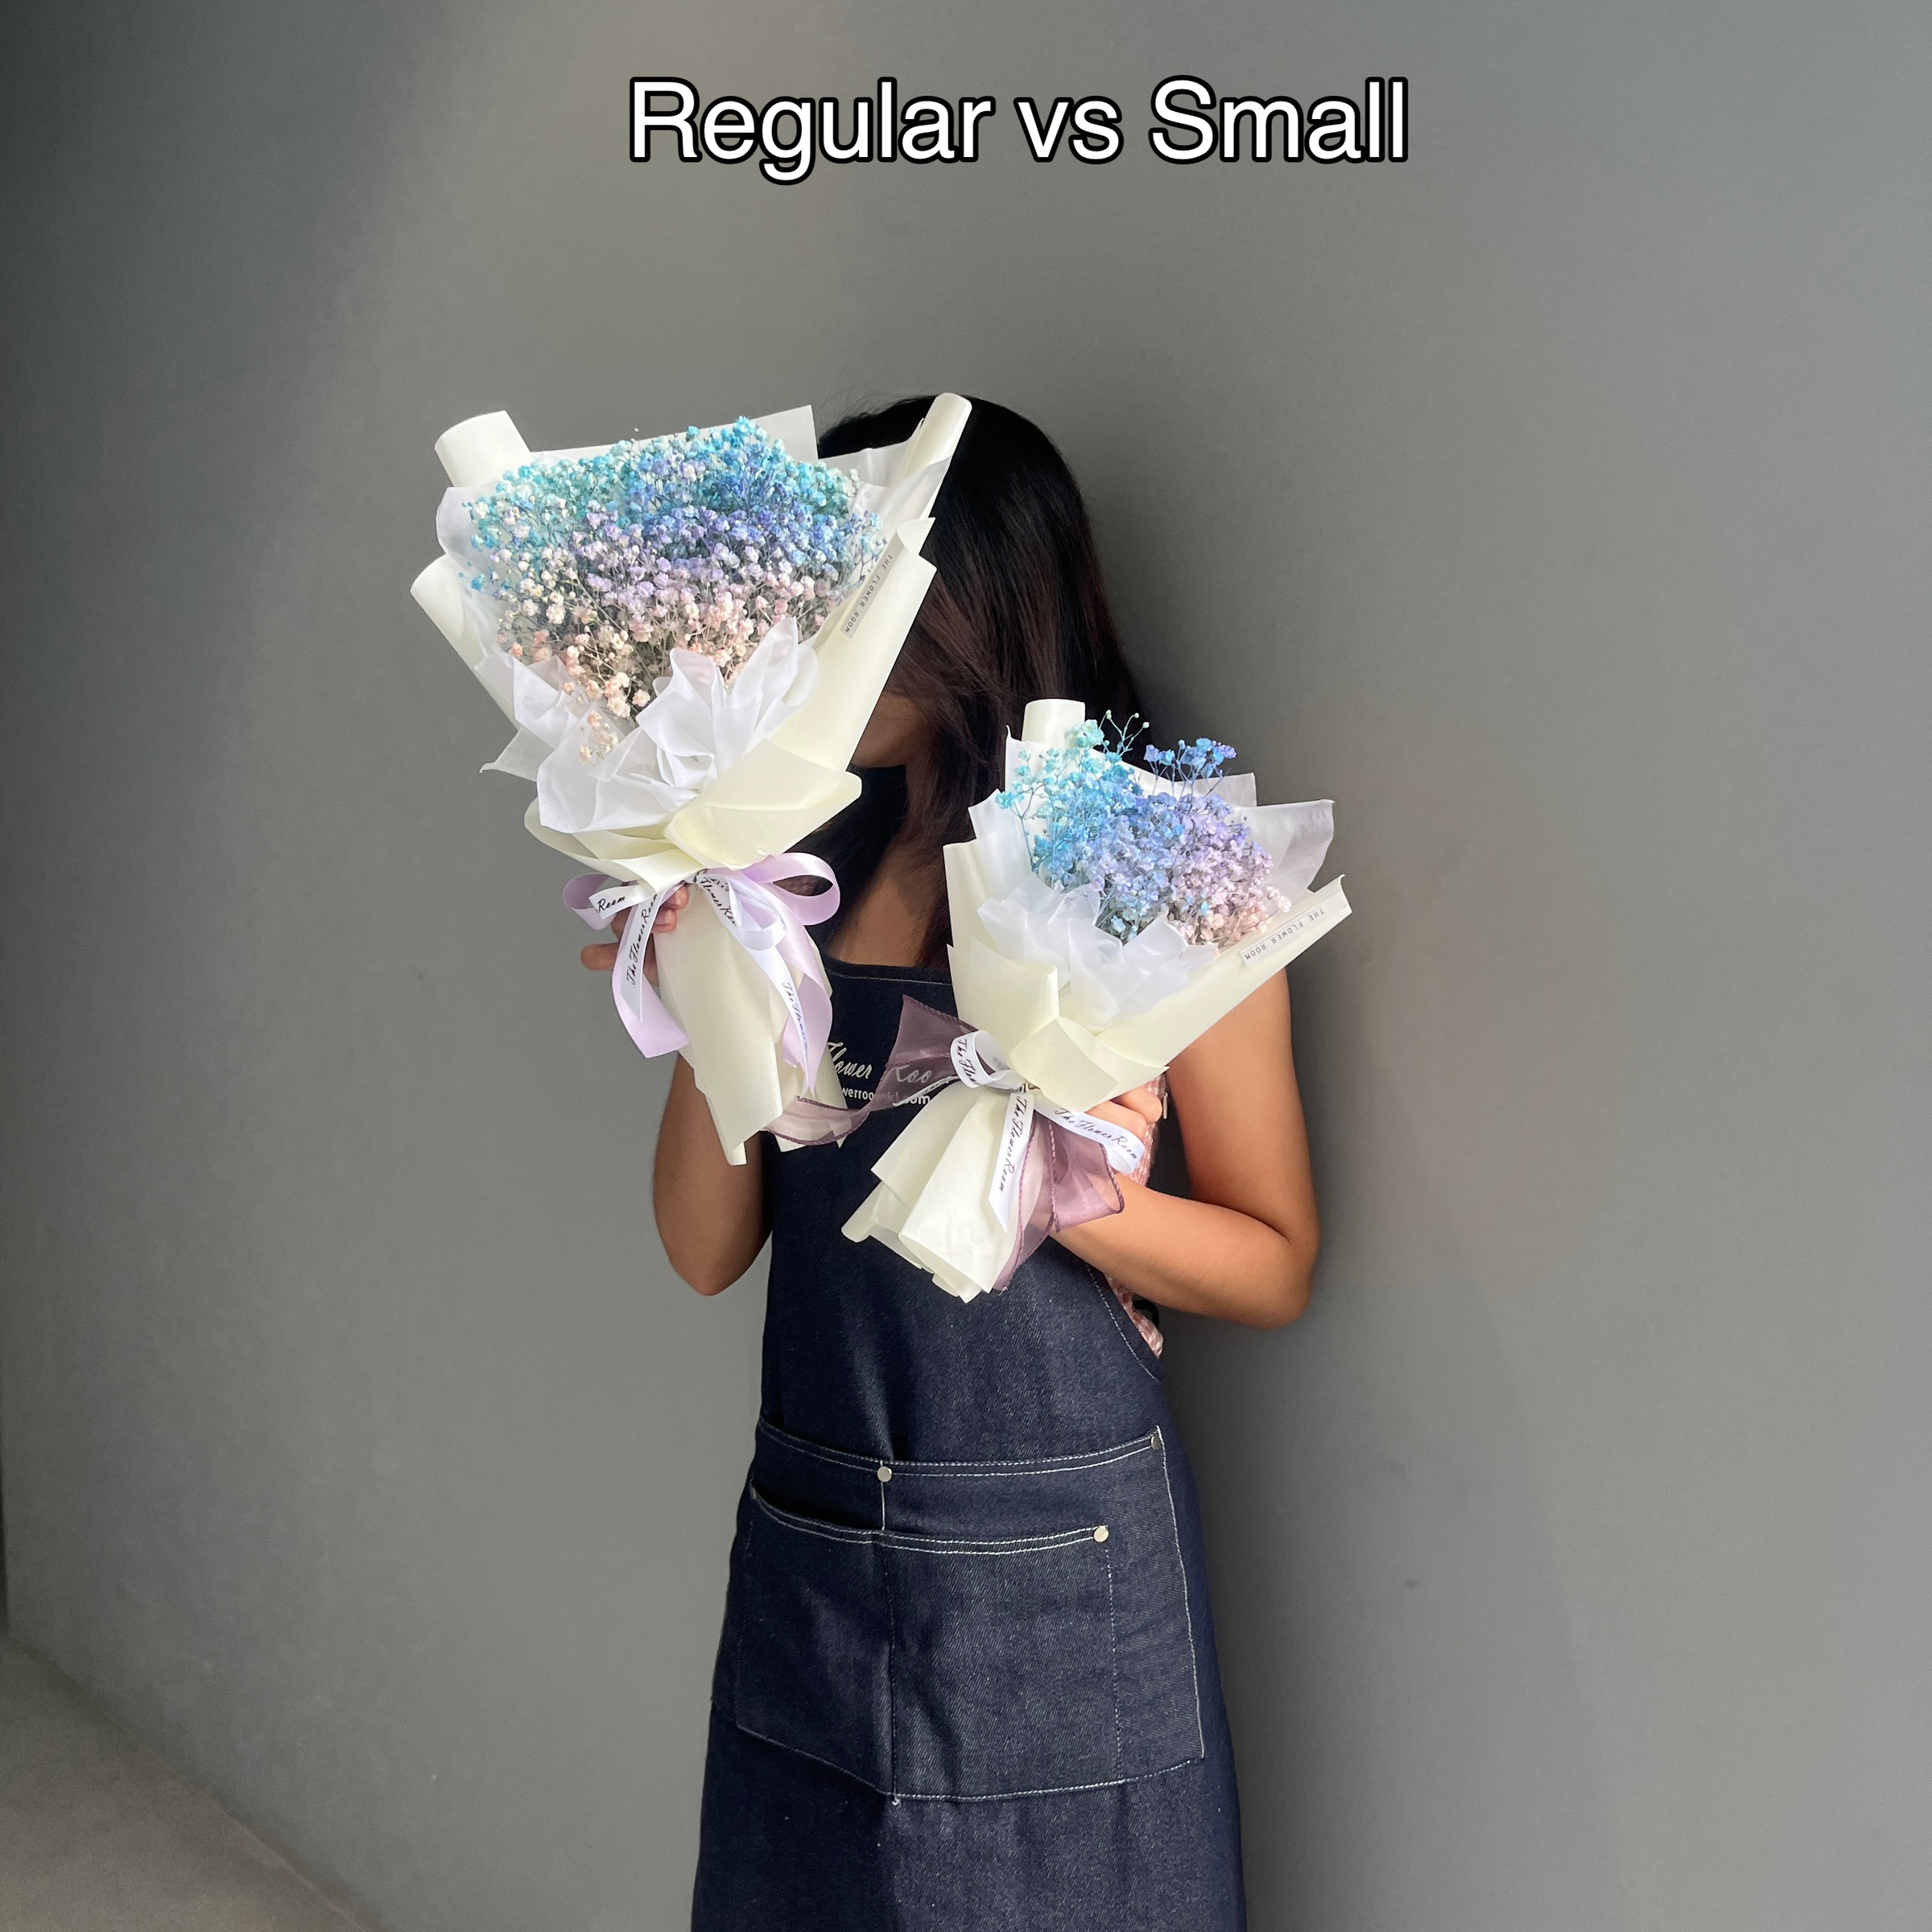 baby breath regular vs small